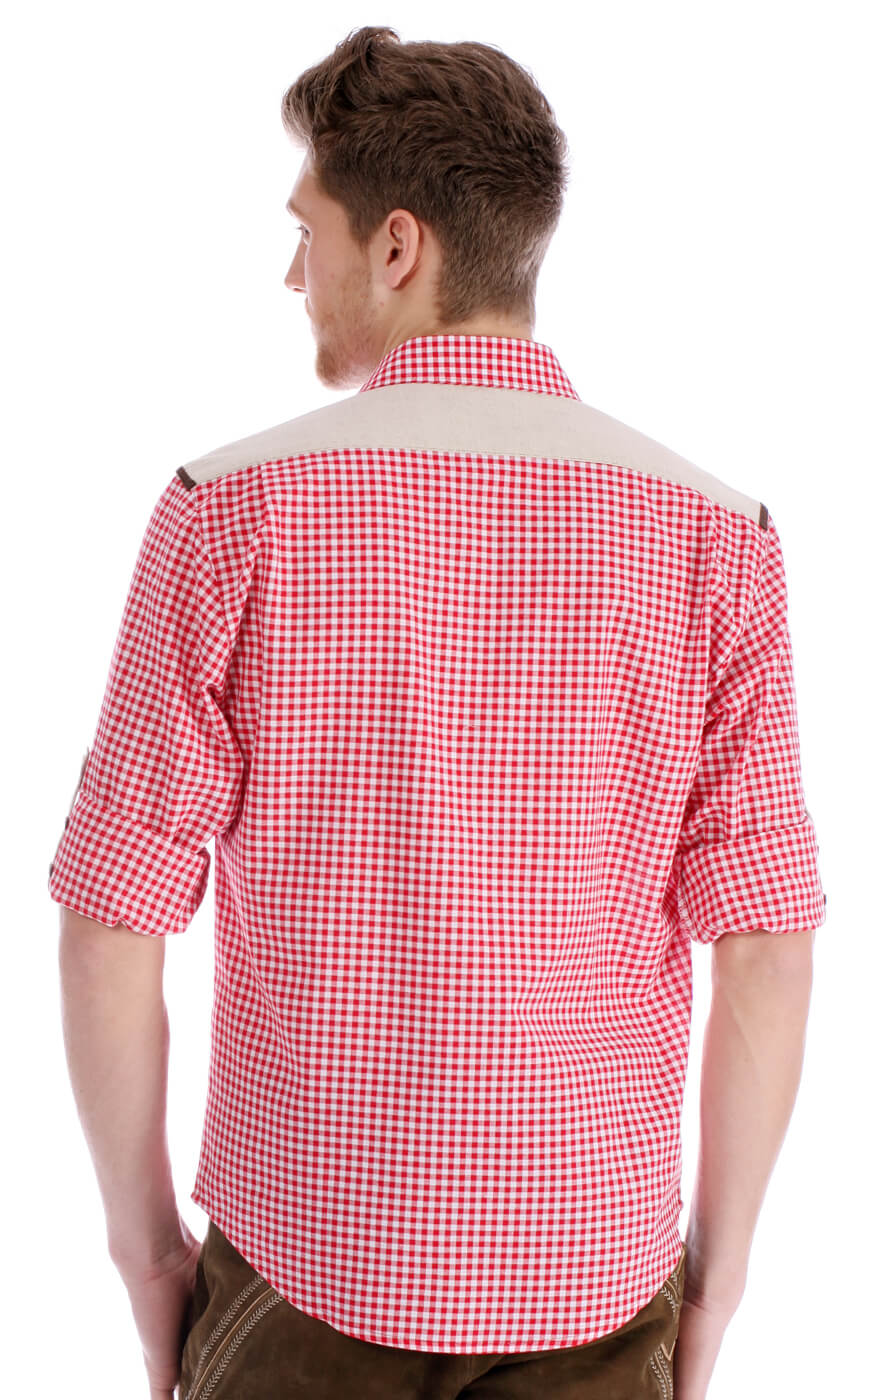 weitere Bilder von German traditional shirt Cyrill red